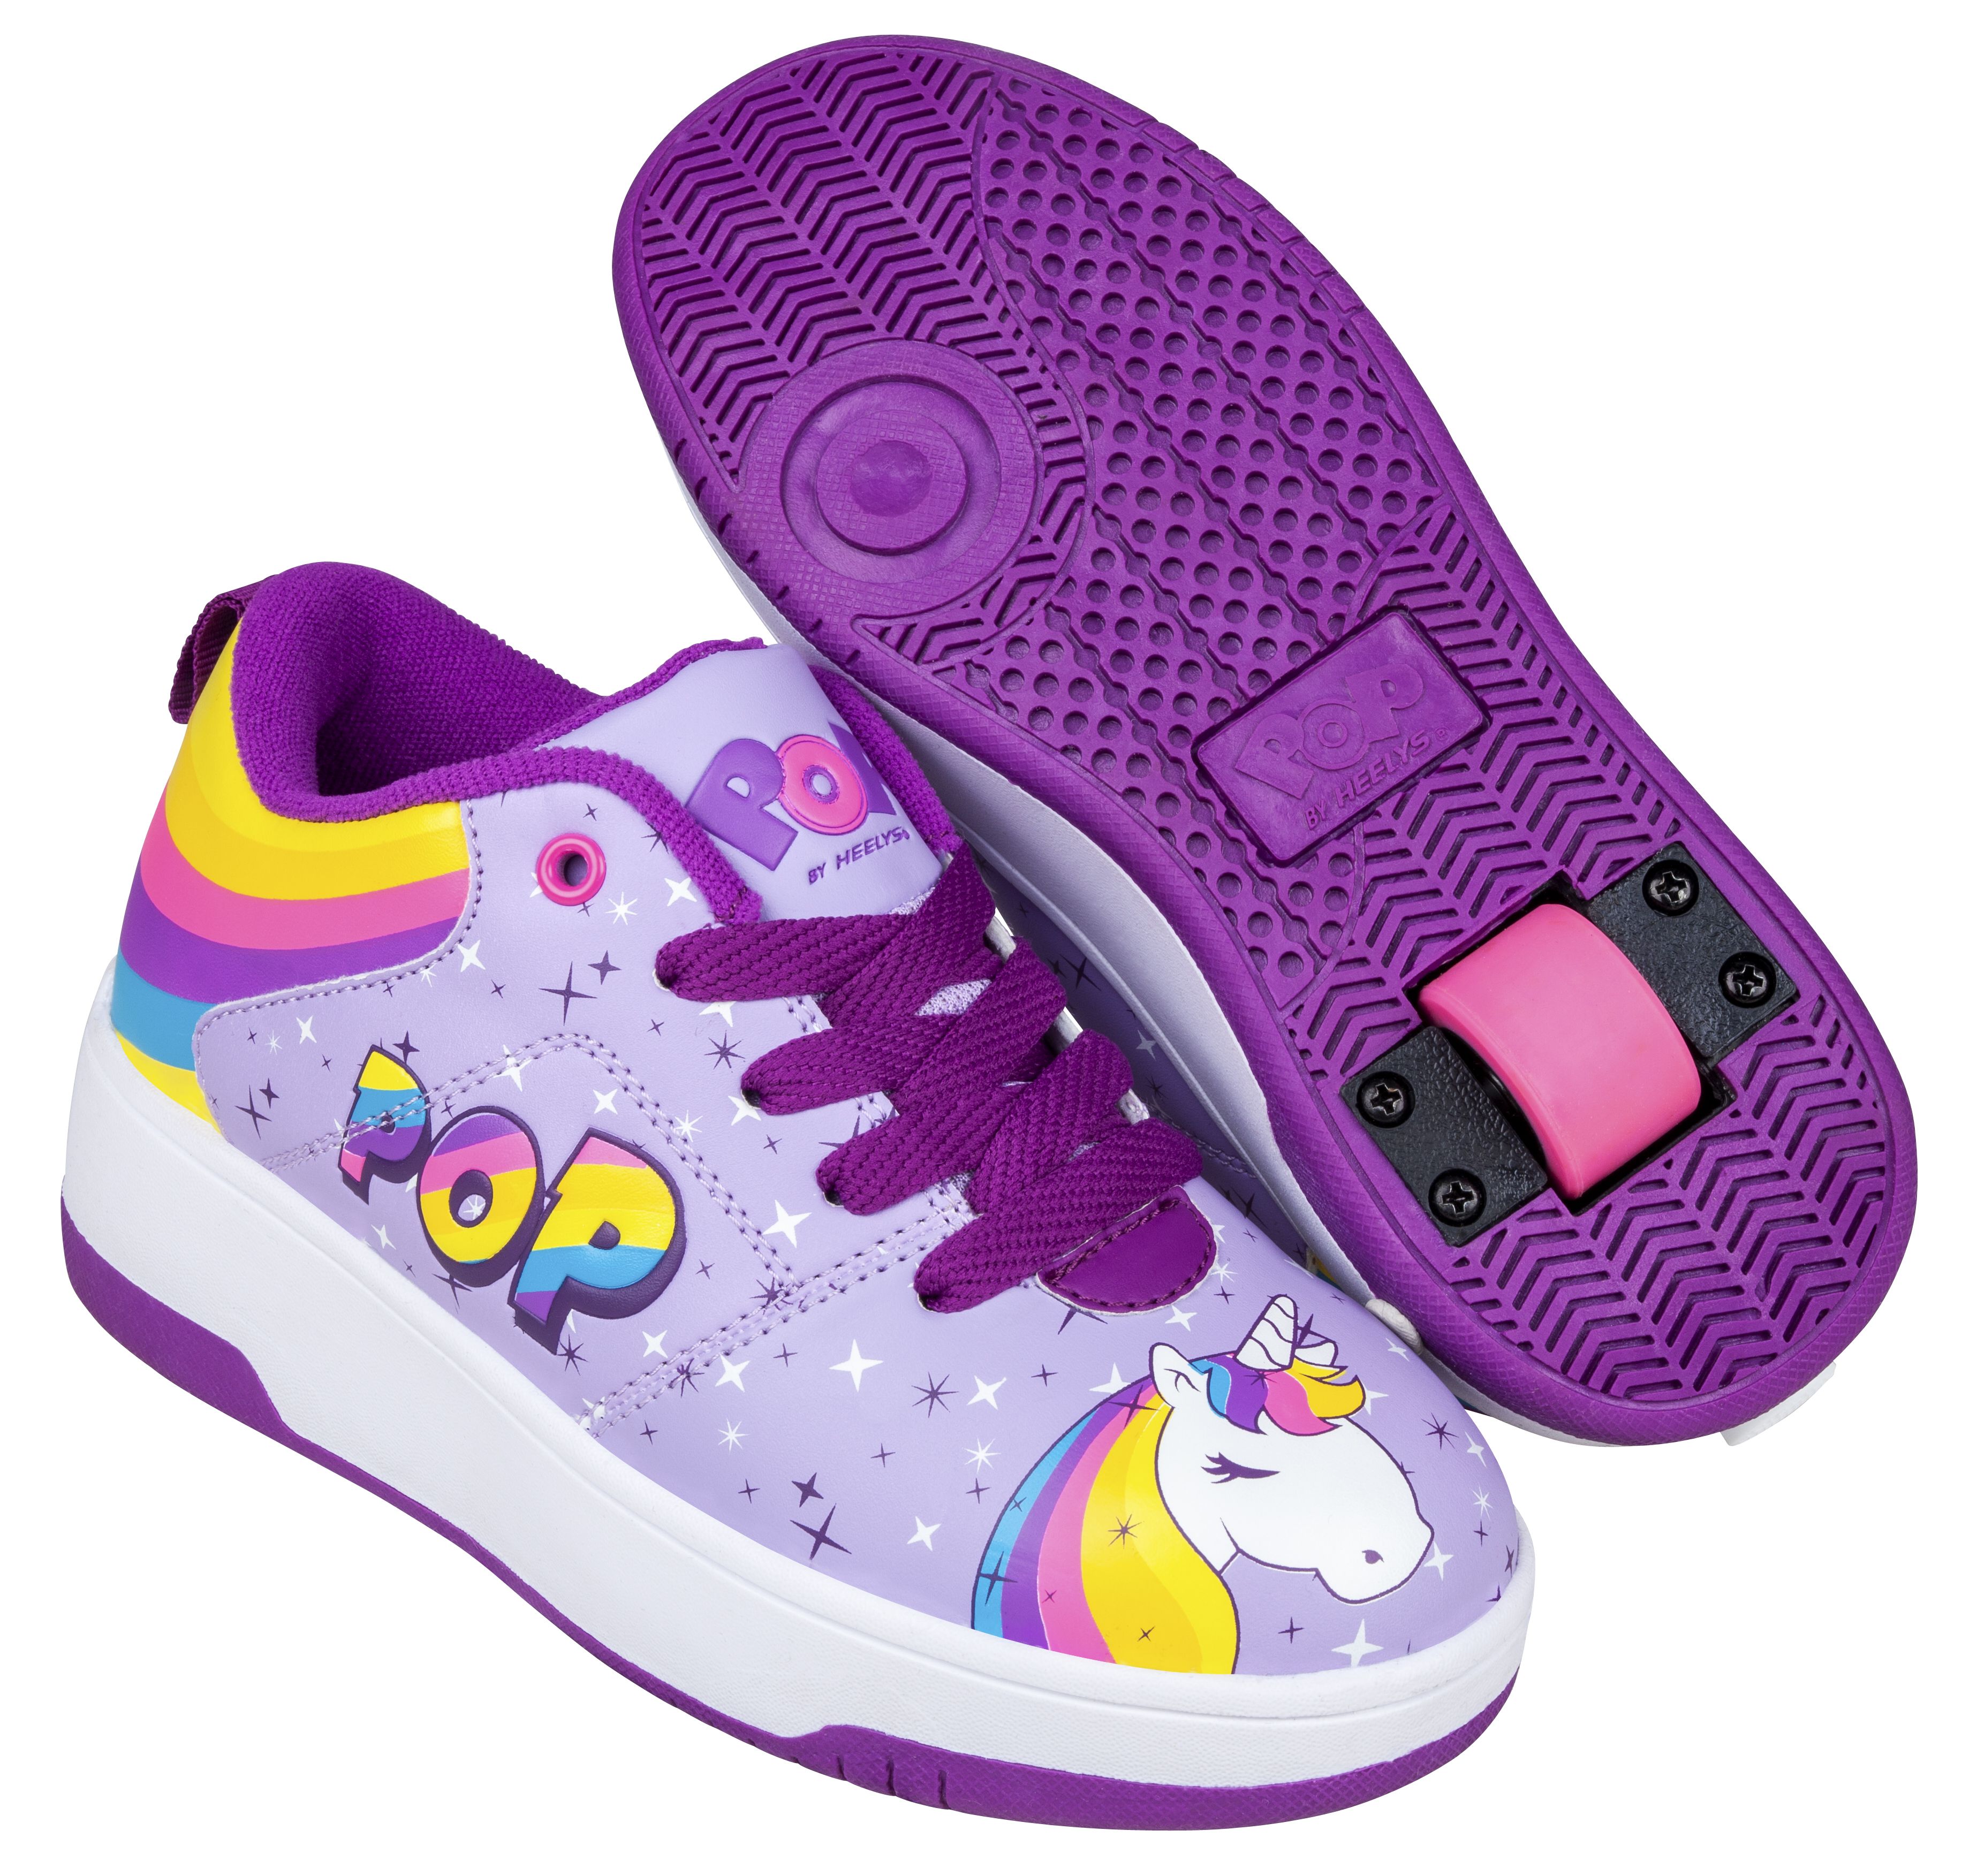 Heelys - POP Shoes - Purple (Size 34) (POP-G1W-0065)